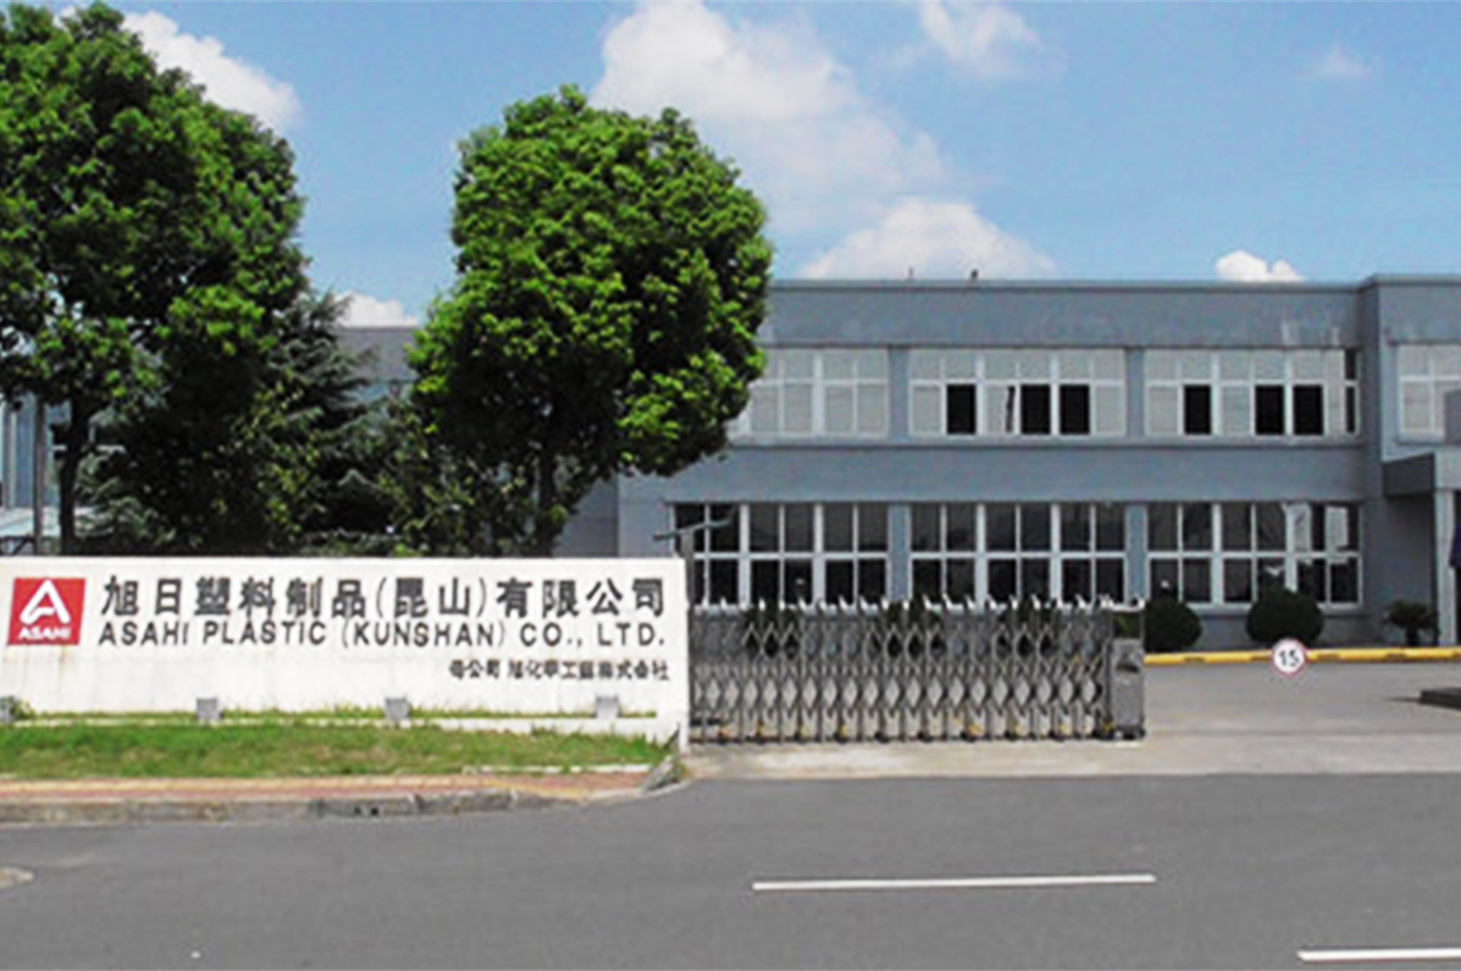 Xuri Plastic Products (Kunshan) Co., Ltd